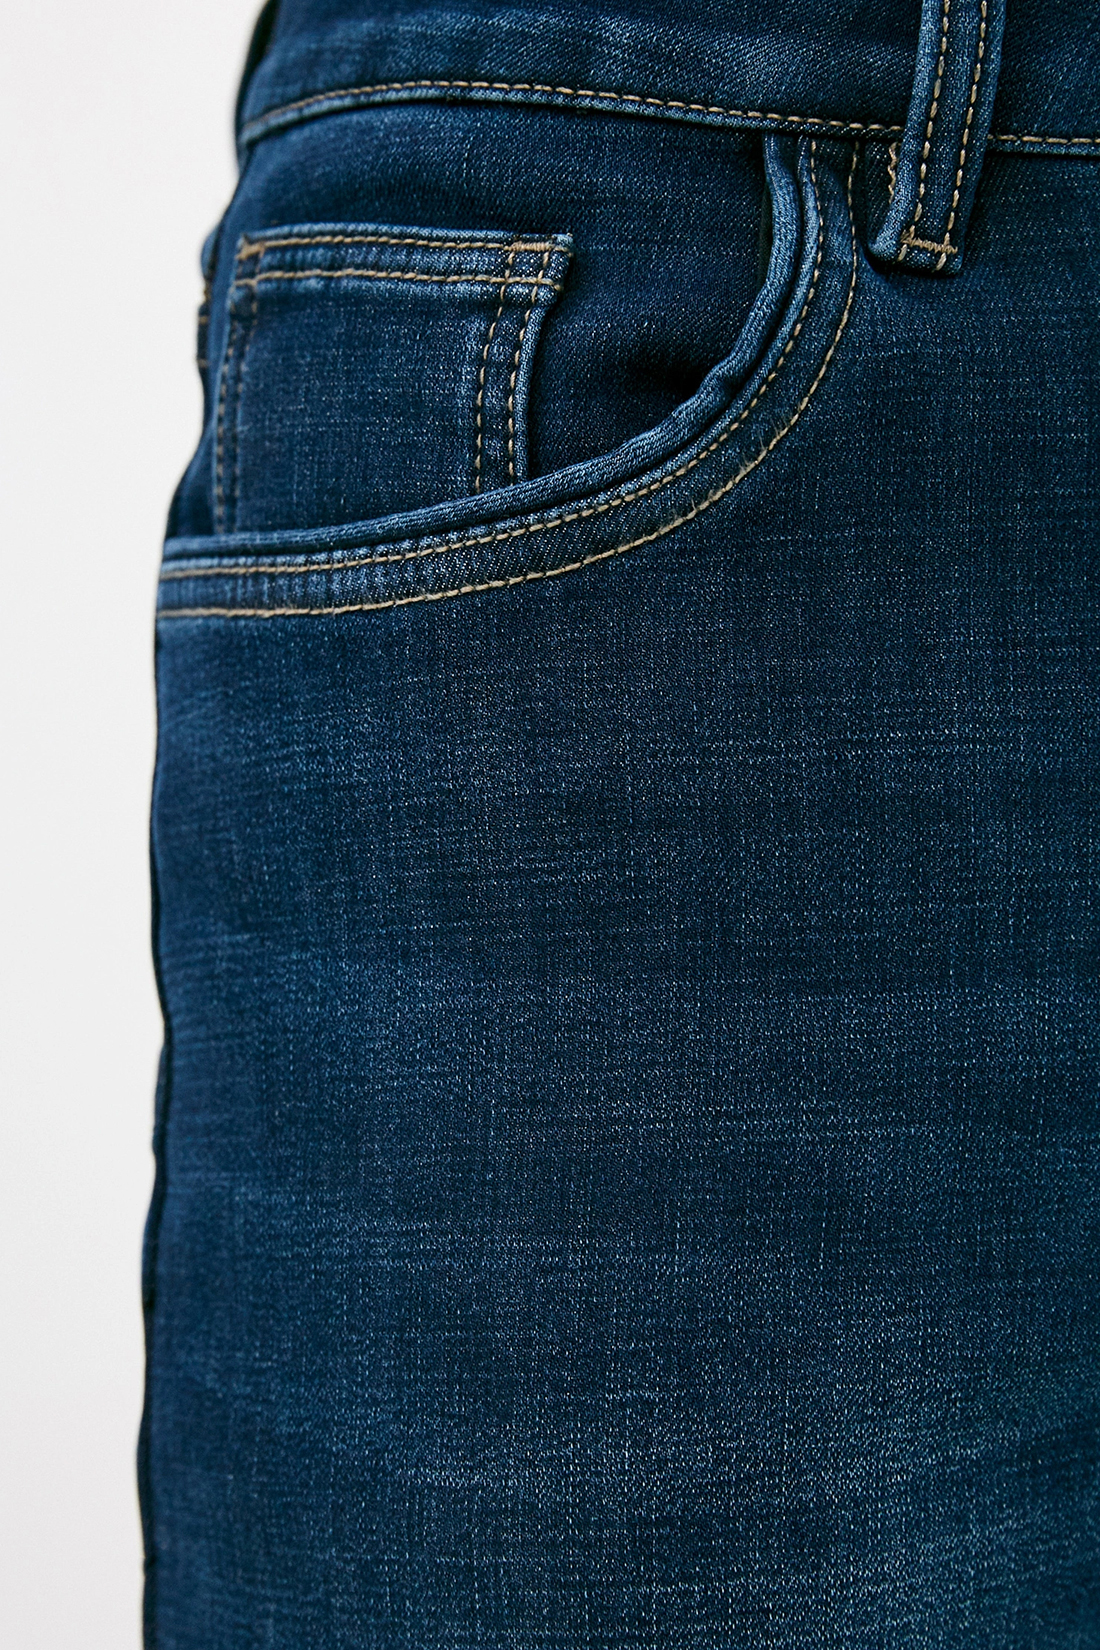 Купить джинсы теплый. Baon утепленные джинсы. Джинсы арт. 29 Размер джинс Остин. Фото джинсов 3 четвертых.